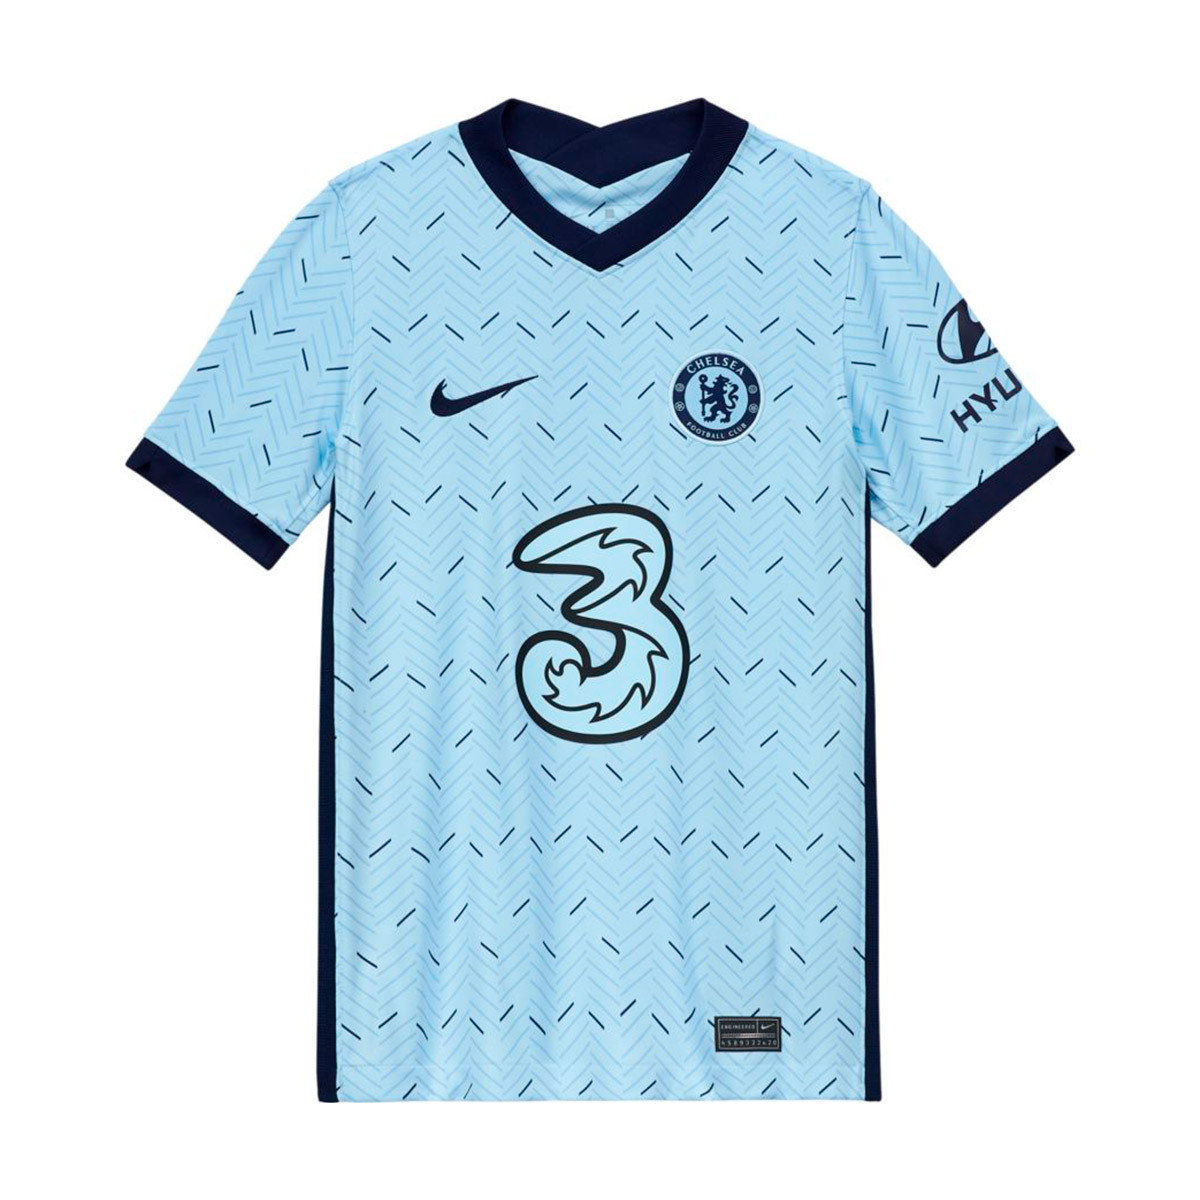 Camiseta Nike Chelsea Fc Stadium Segunda Equipacion 2020 2021 Nino Cobalt Tint Blackened Blue Tienda De Futbol Futbol Emotion